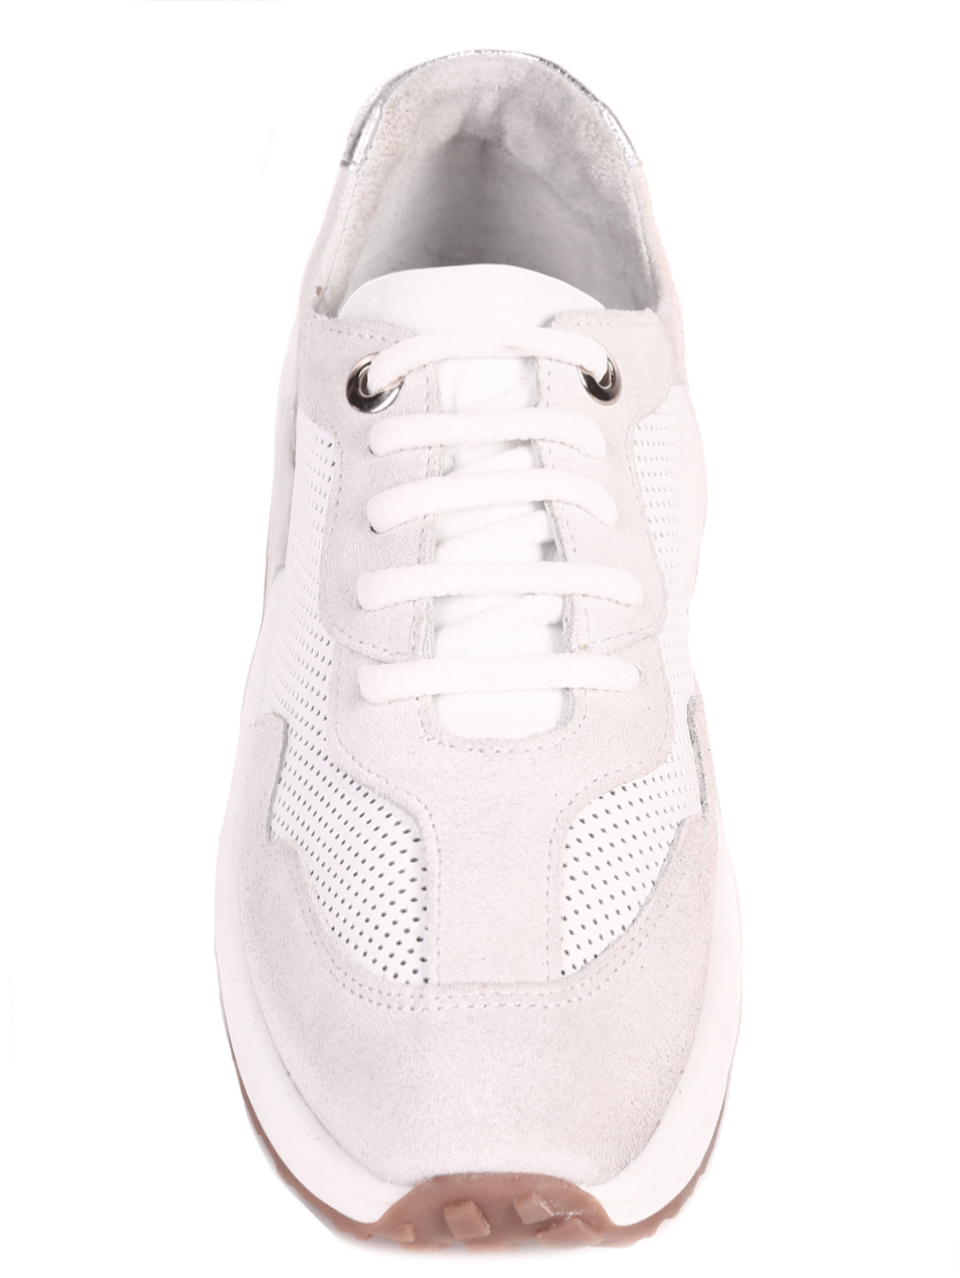 Ежедневни дамски комфортни обувки от естествена кожа 3AT-22302 white/grey